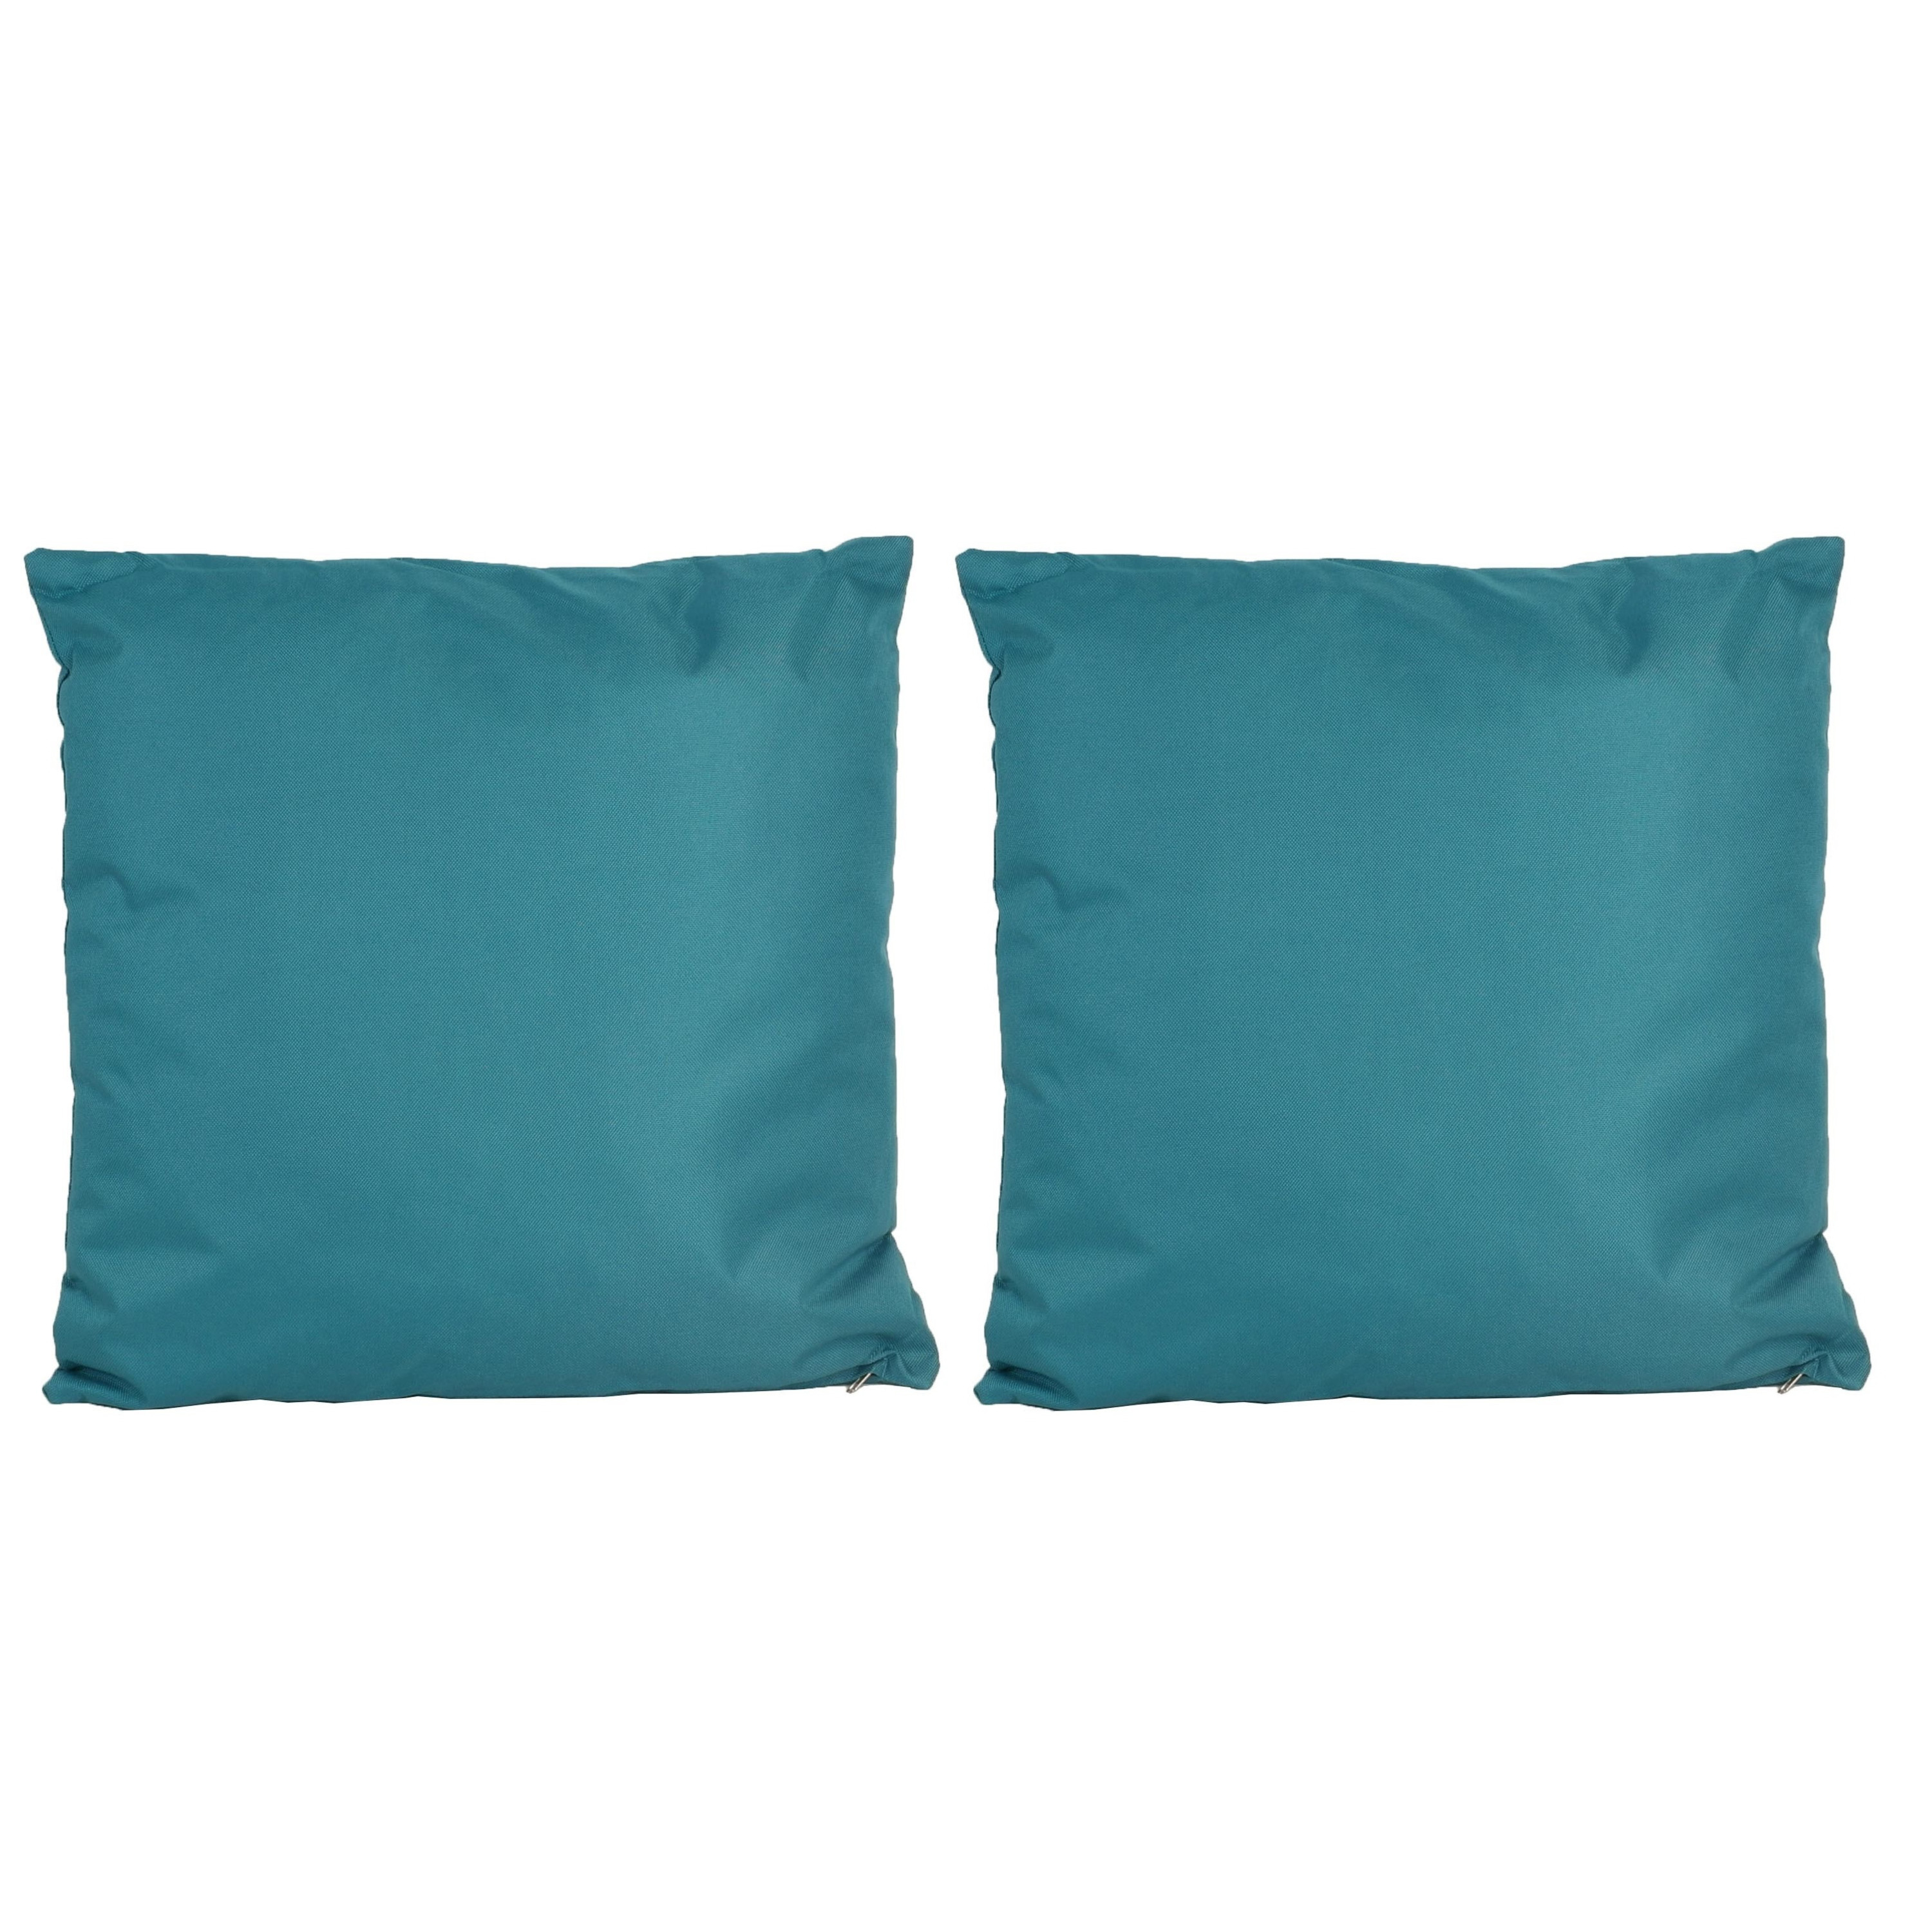 8x Bank-sier kussens voor binnen en buiten in de kleur petrol blauw 45 x 45 cm